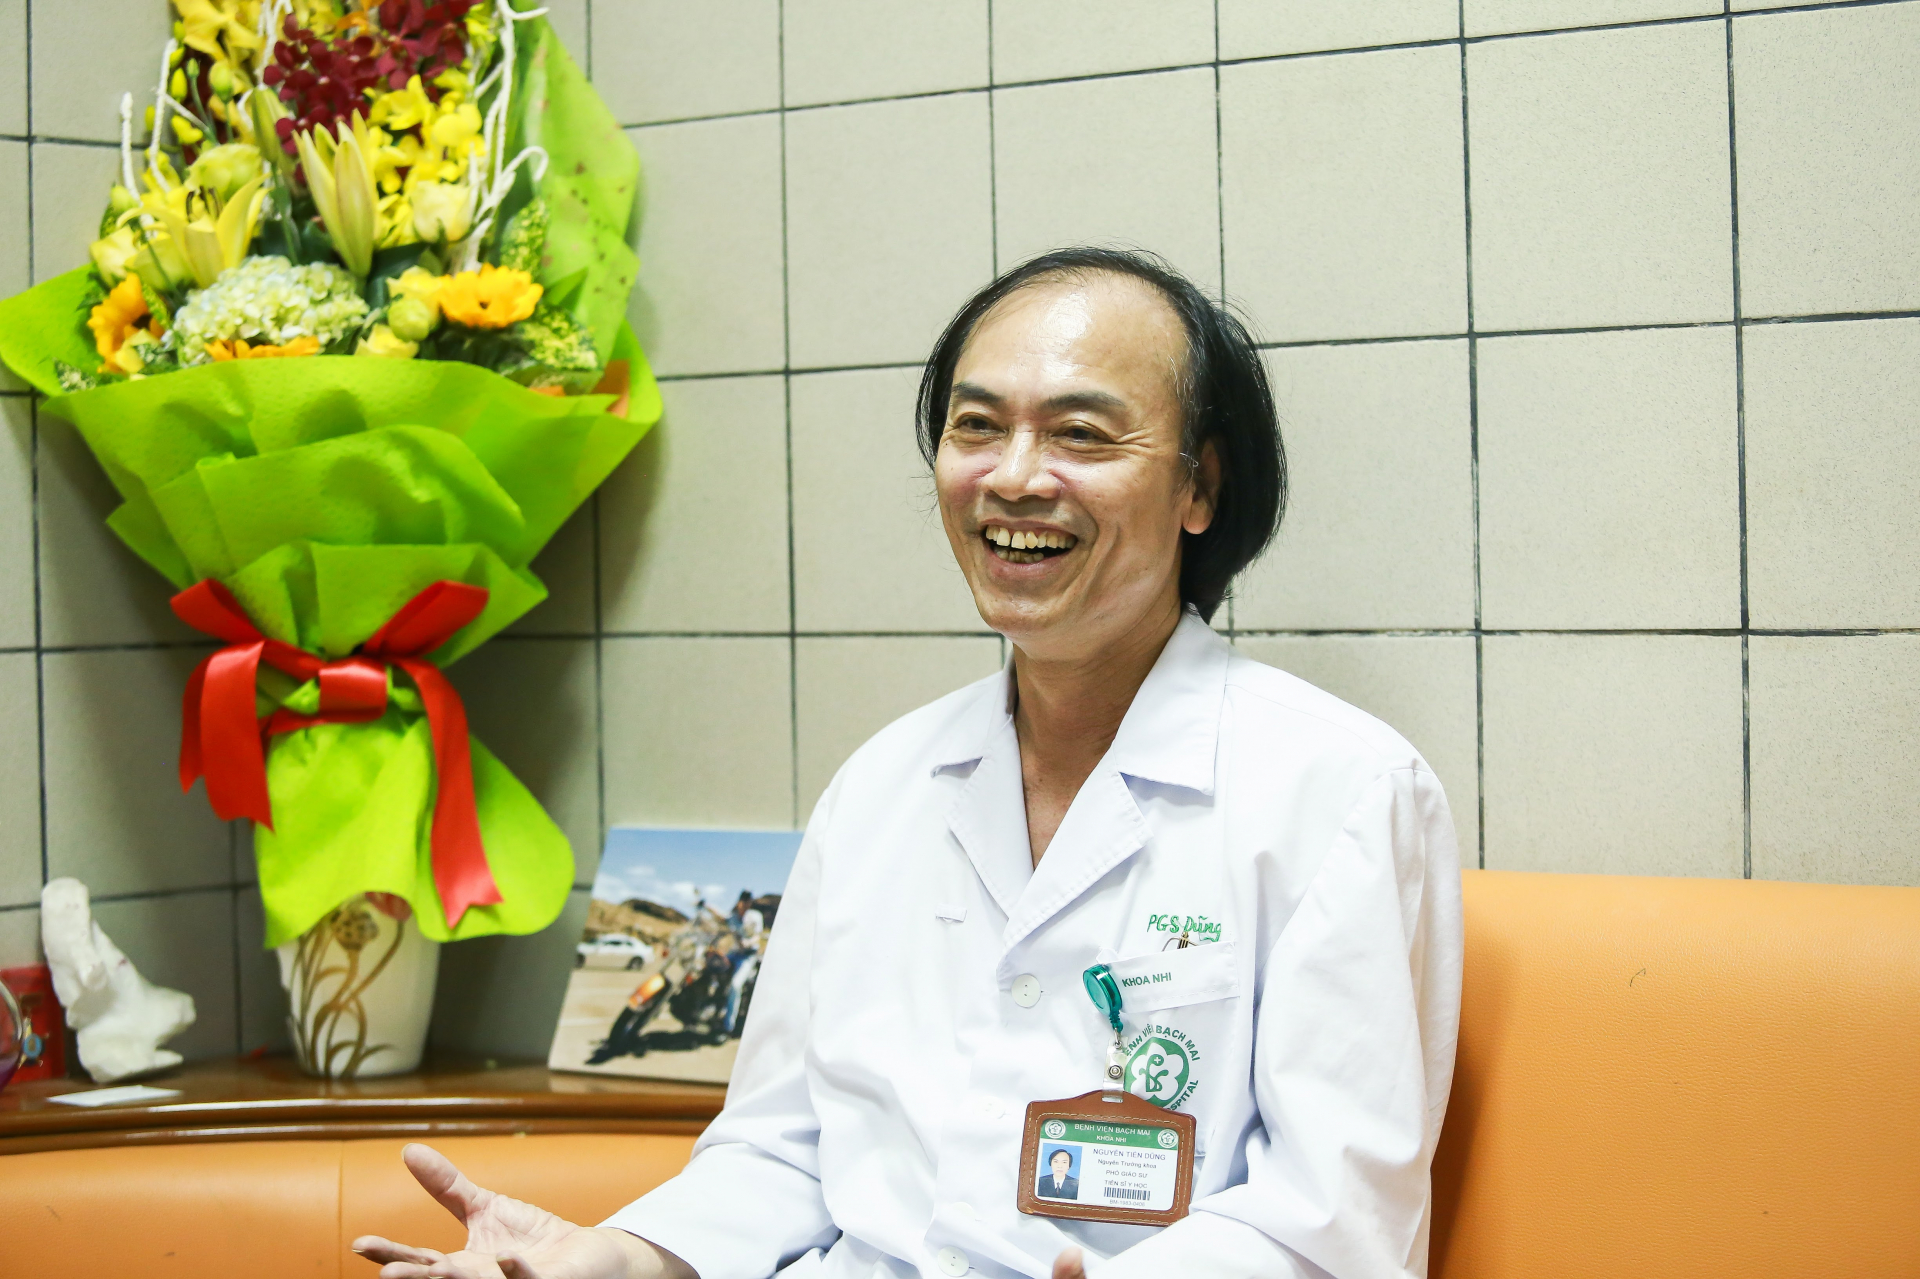 PGS.TS Nguyễn Tiến Dũng, Nguyên Trưởng khoa Nhi, Bệnh viện Bạch Mai